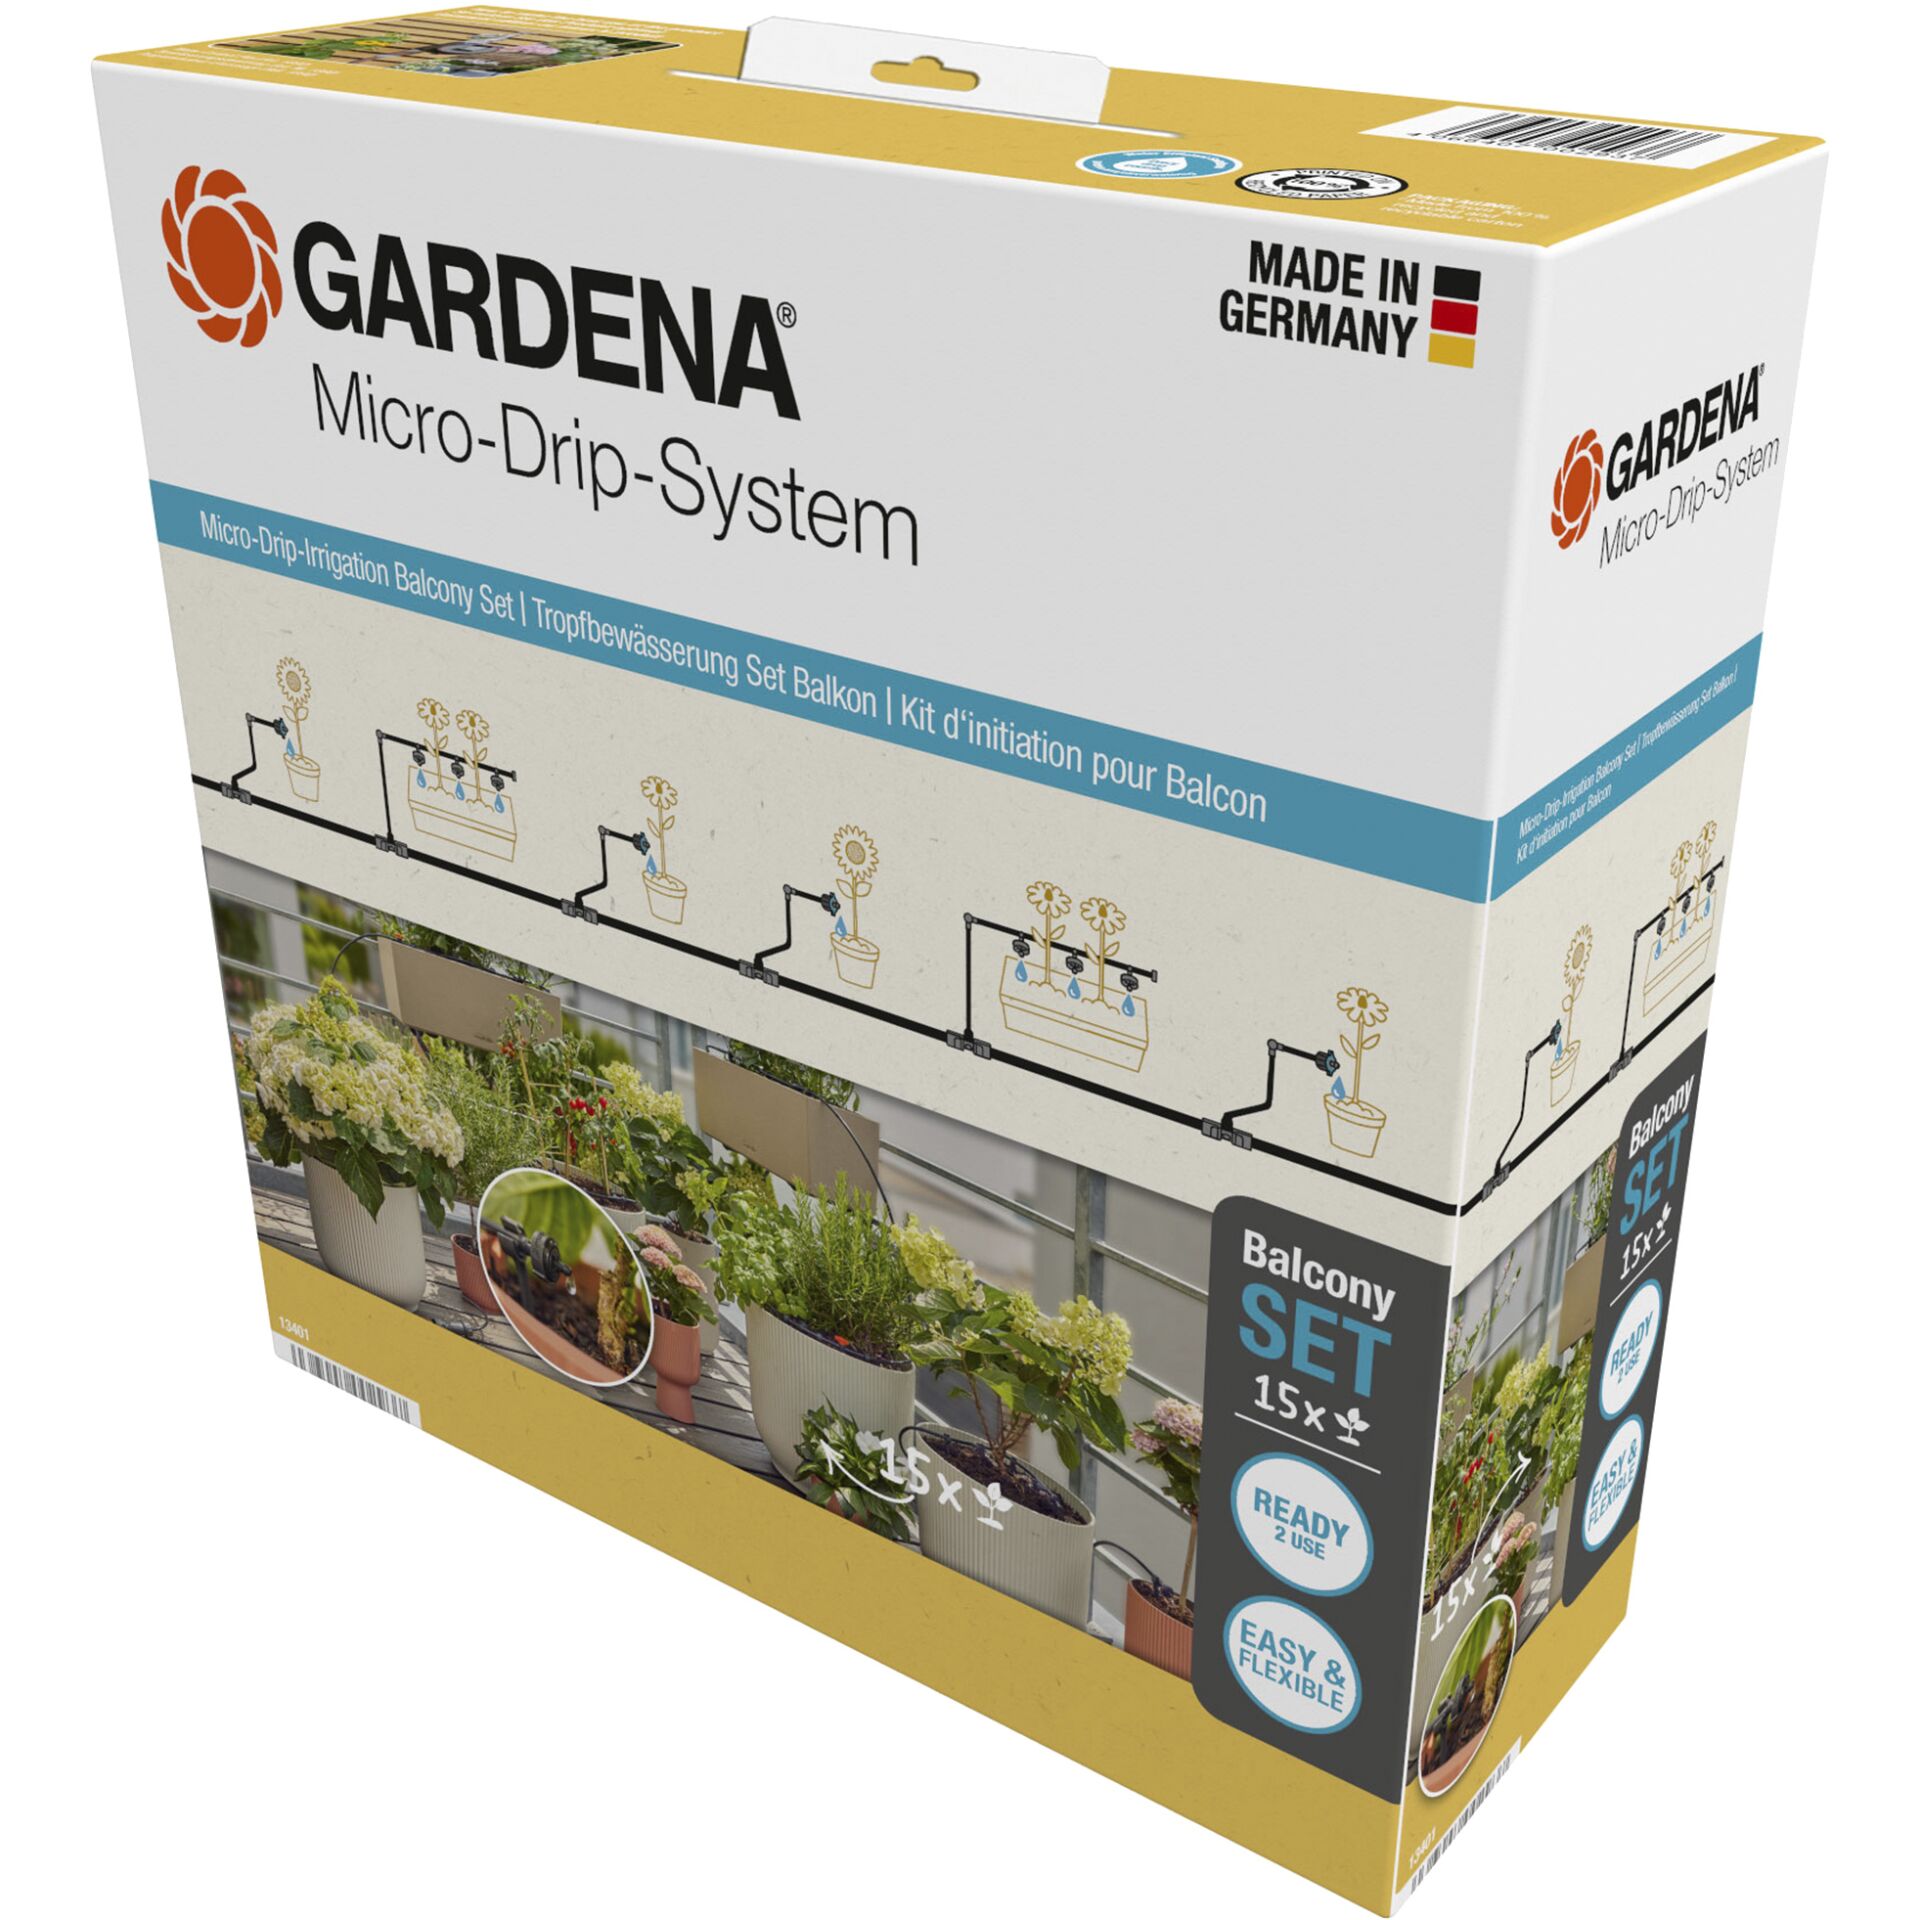 Gardena Tropfbewässerung Set Balkon (15 Pflanzen) Starterset für eine zuverlässige Bewässerung - Modell 2023